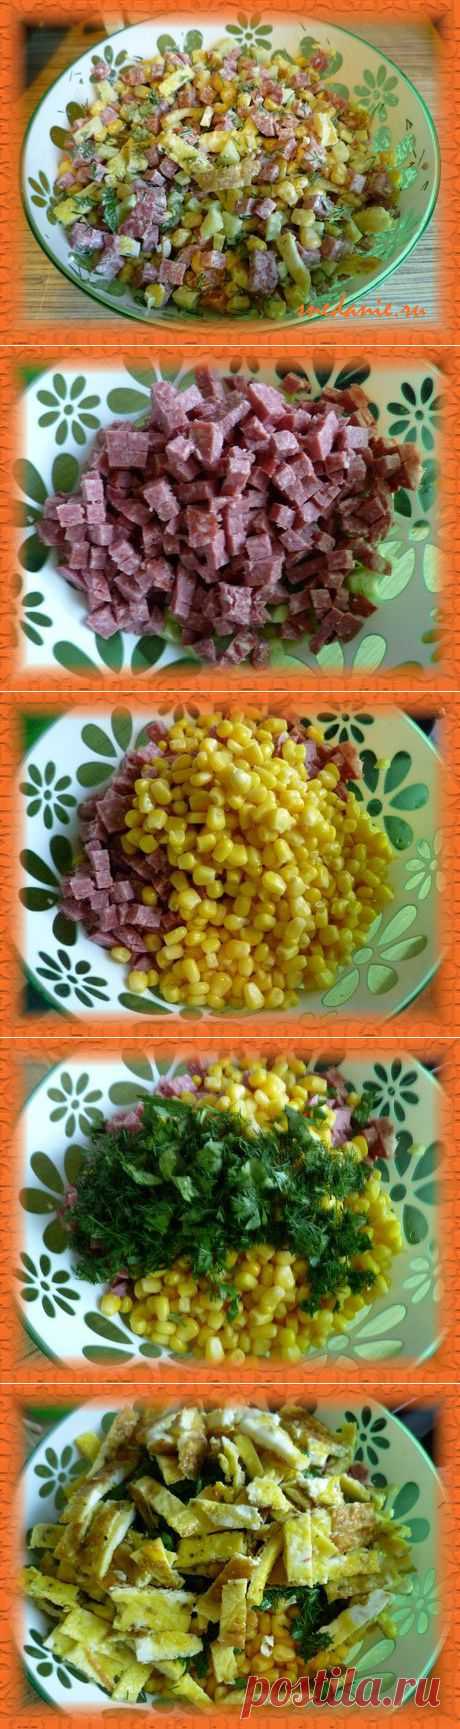 Салат с омлетом, ветчиной и кукурузой - рецепт с фото